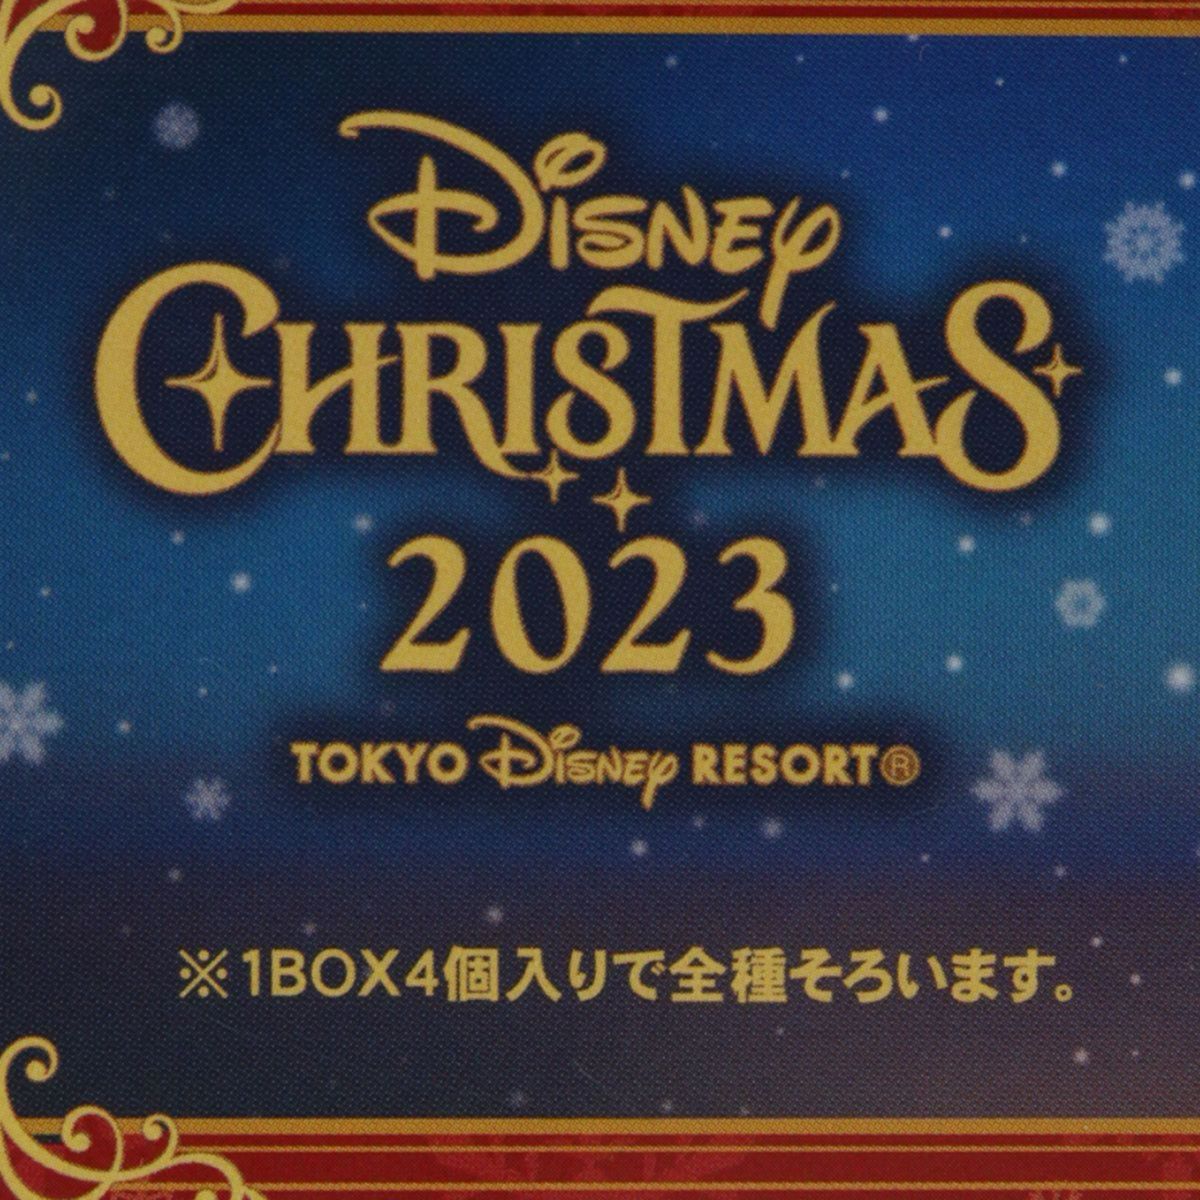 【コンプリートセット】ディズニークリスマス2023 フィギュアセット